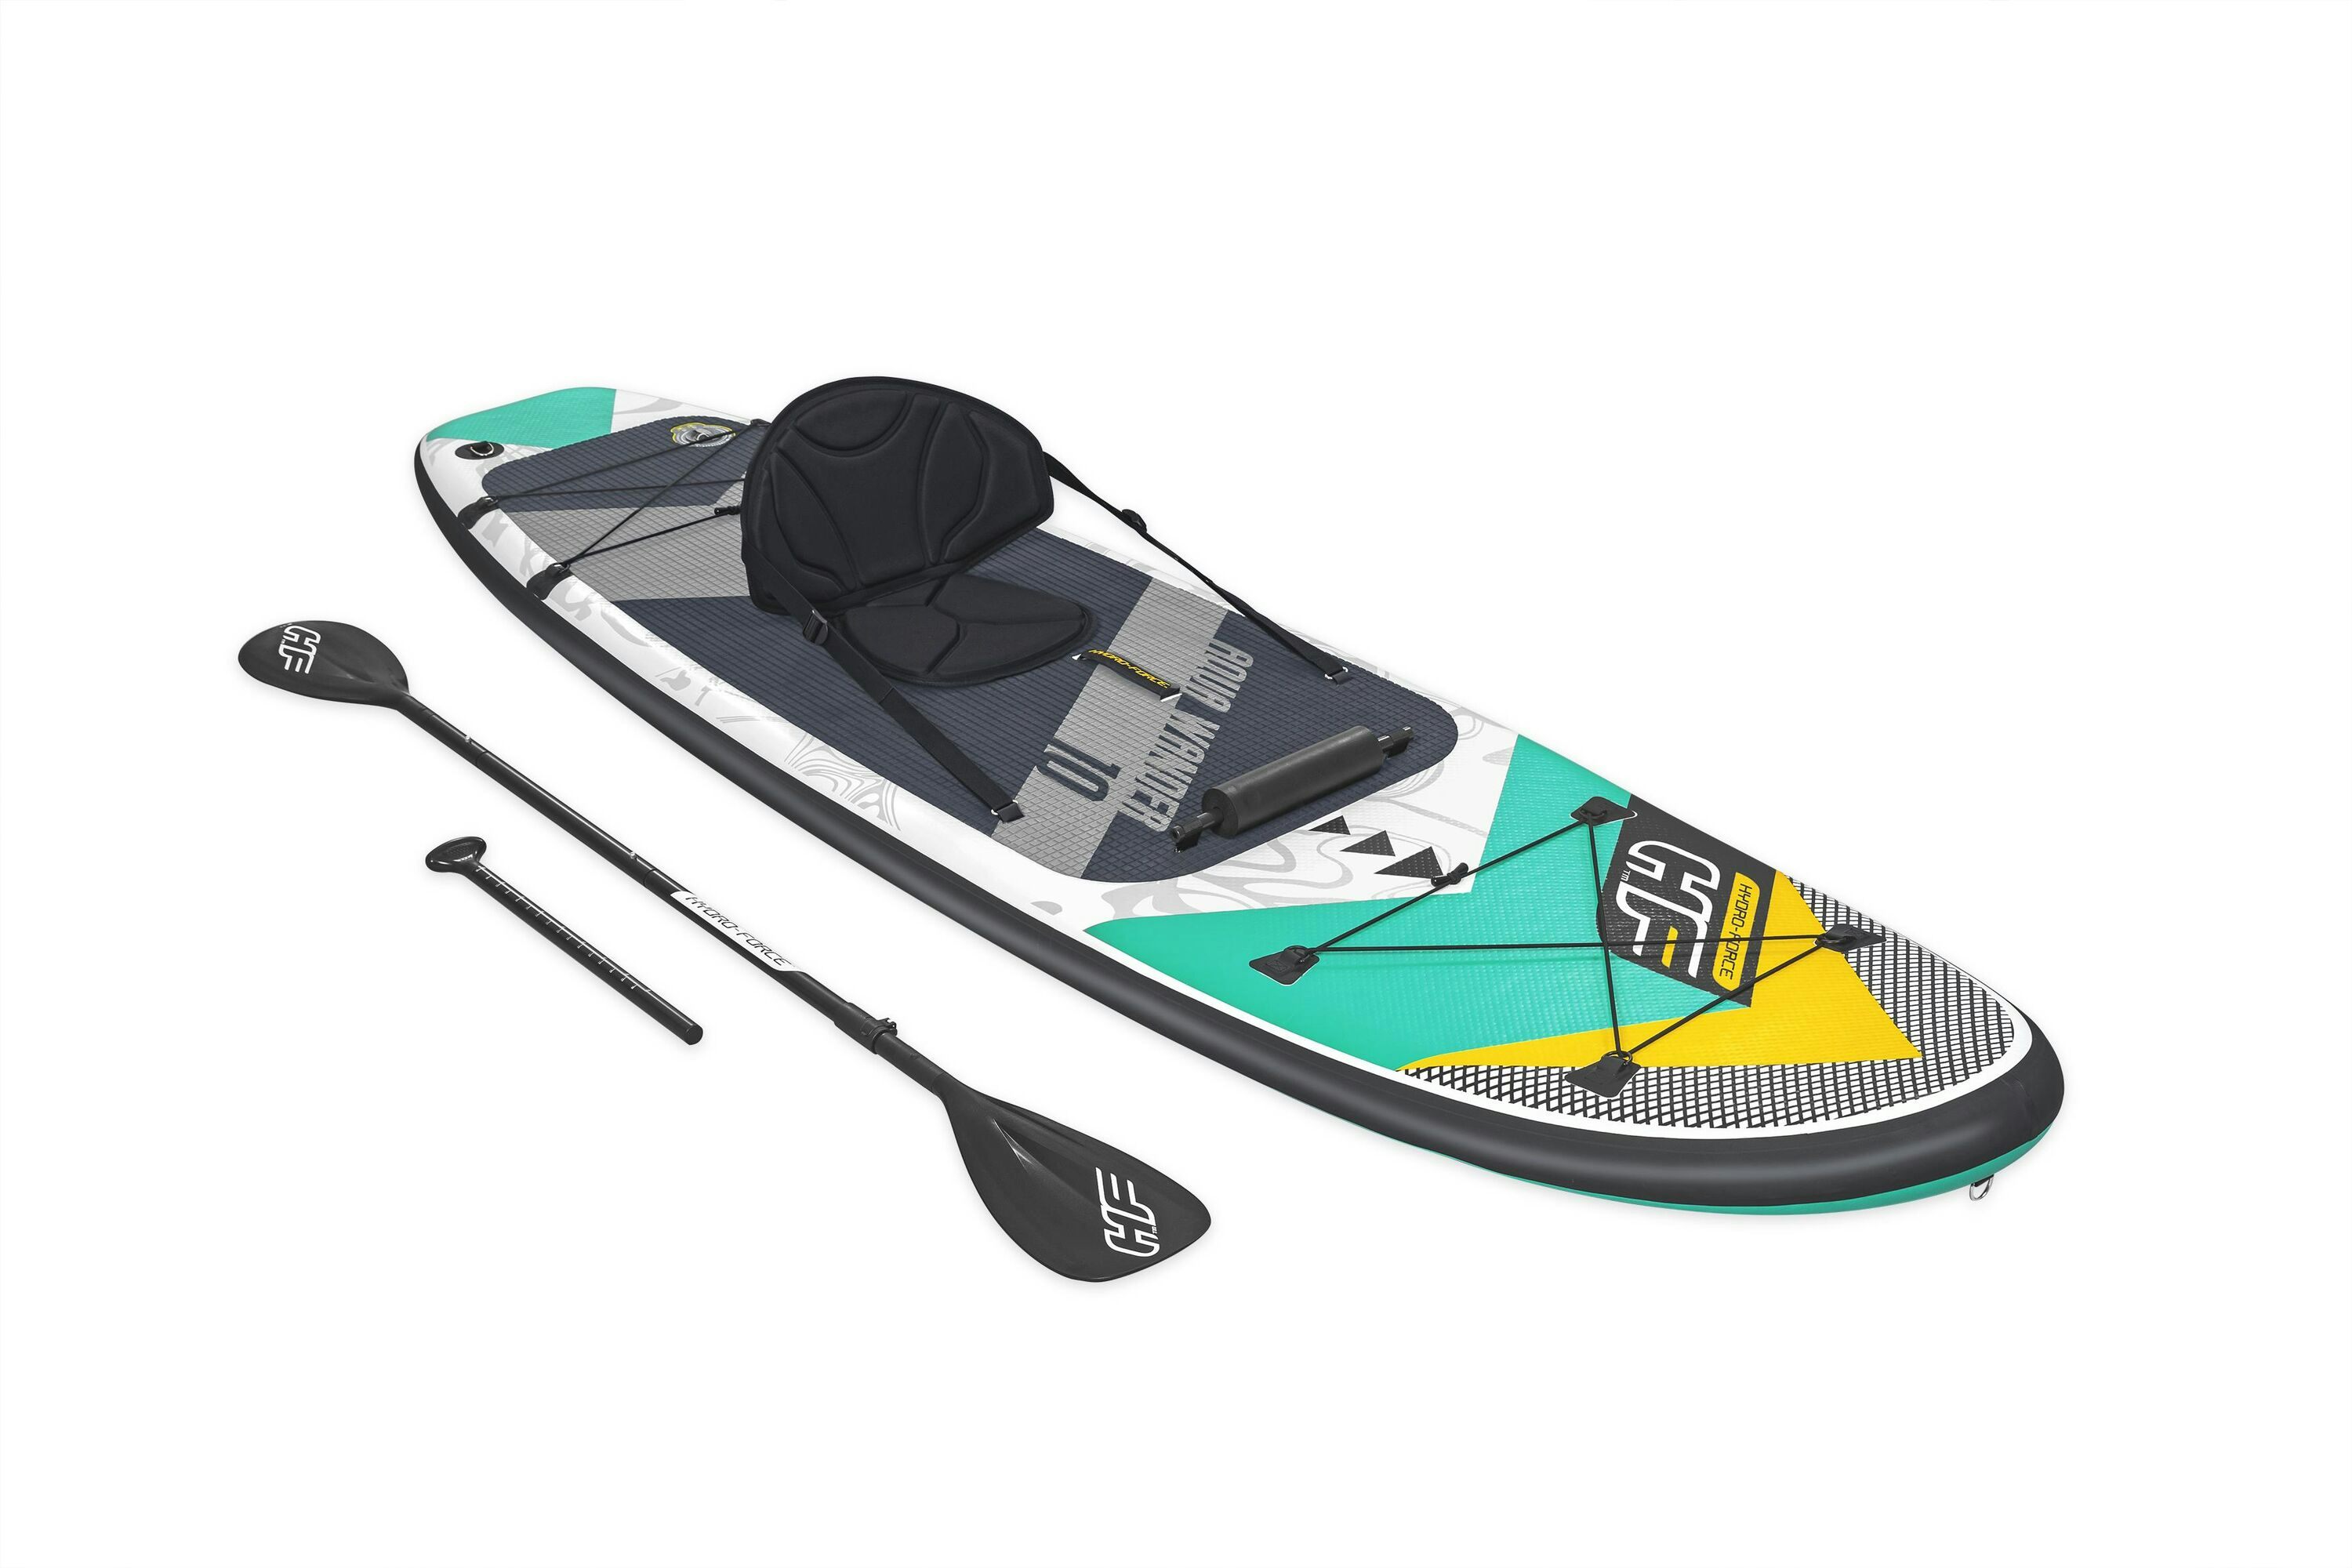 Sports d'eau Paddle SUP gonflable Hydro-Force™ Aqua Wander, 305 x 84 x 12 cm avec pagaie, leash, pompe, 2 ailerons et sac à dos de transport, siège détachable Bestway 1